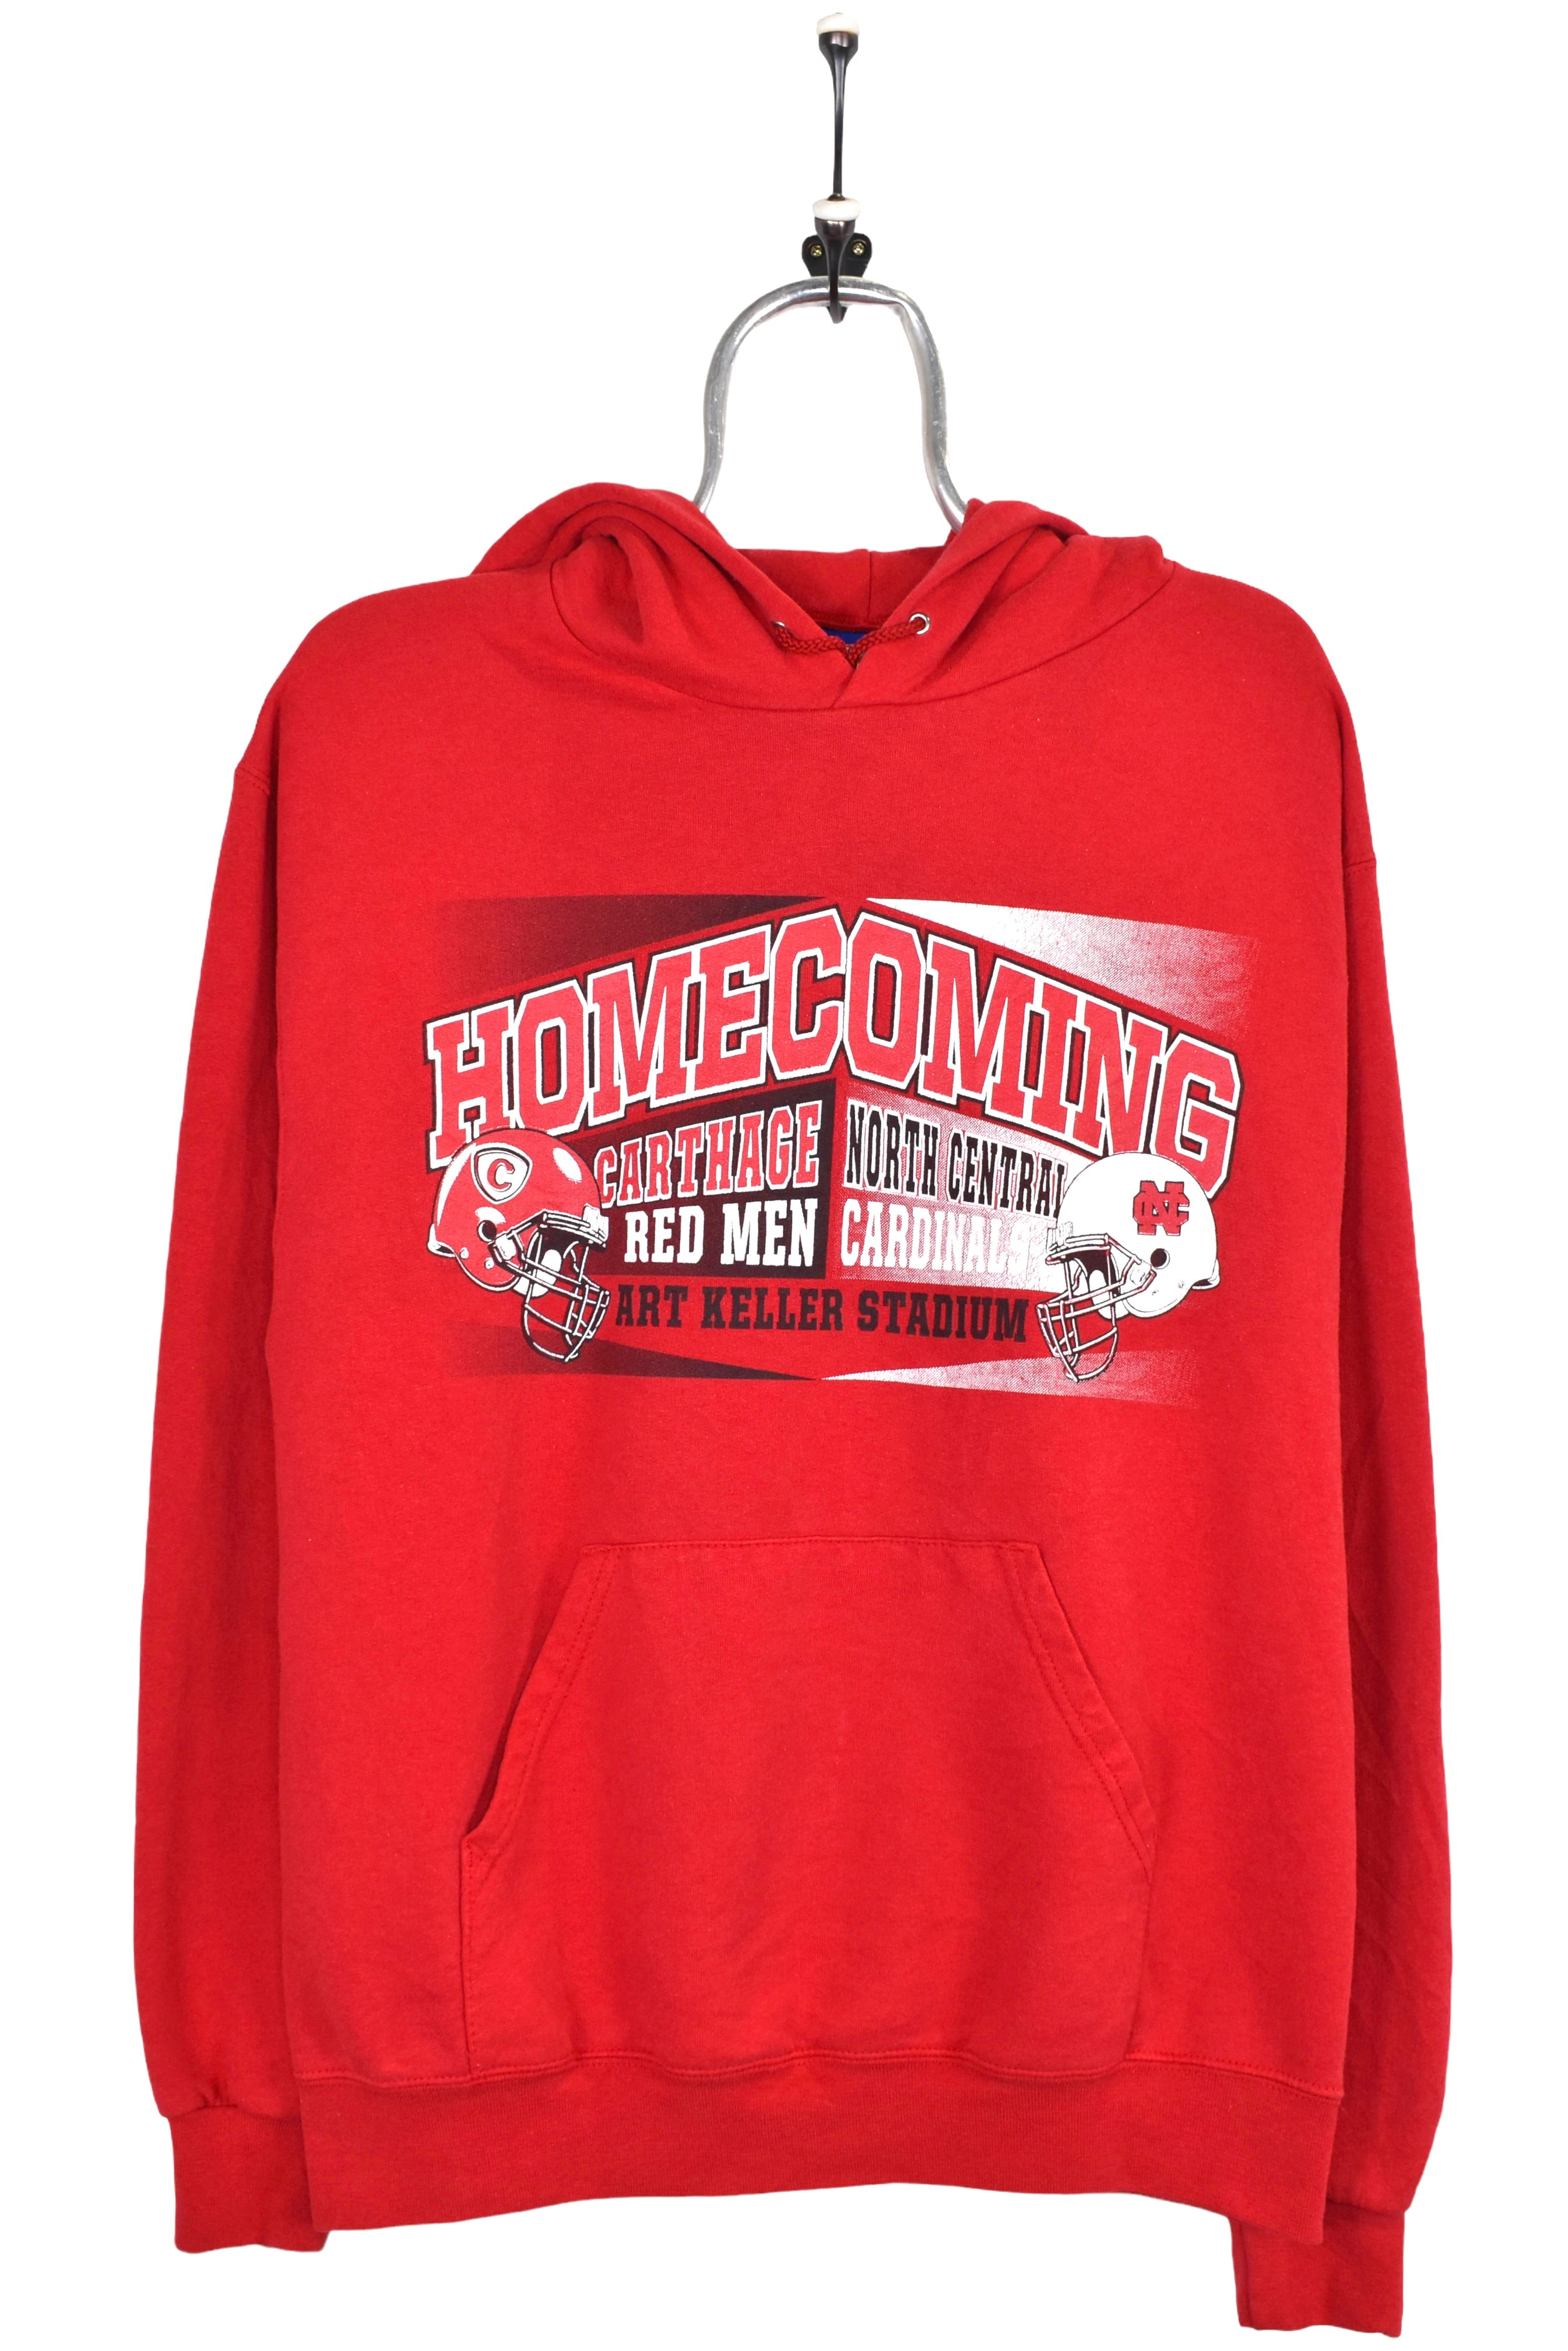 Vintage college football hoodie, red graphic sweatshirt - Medium